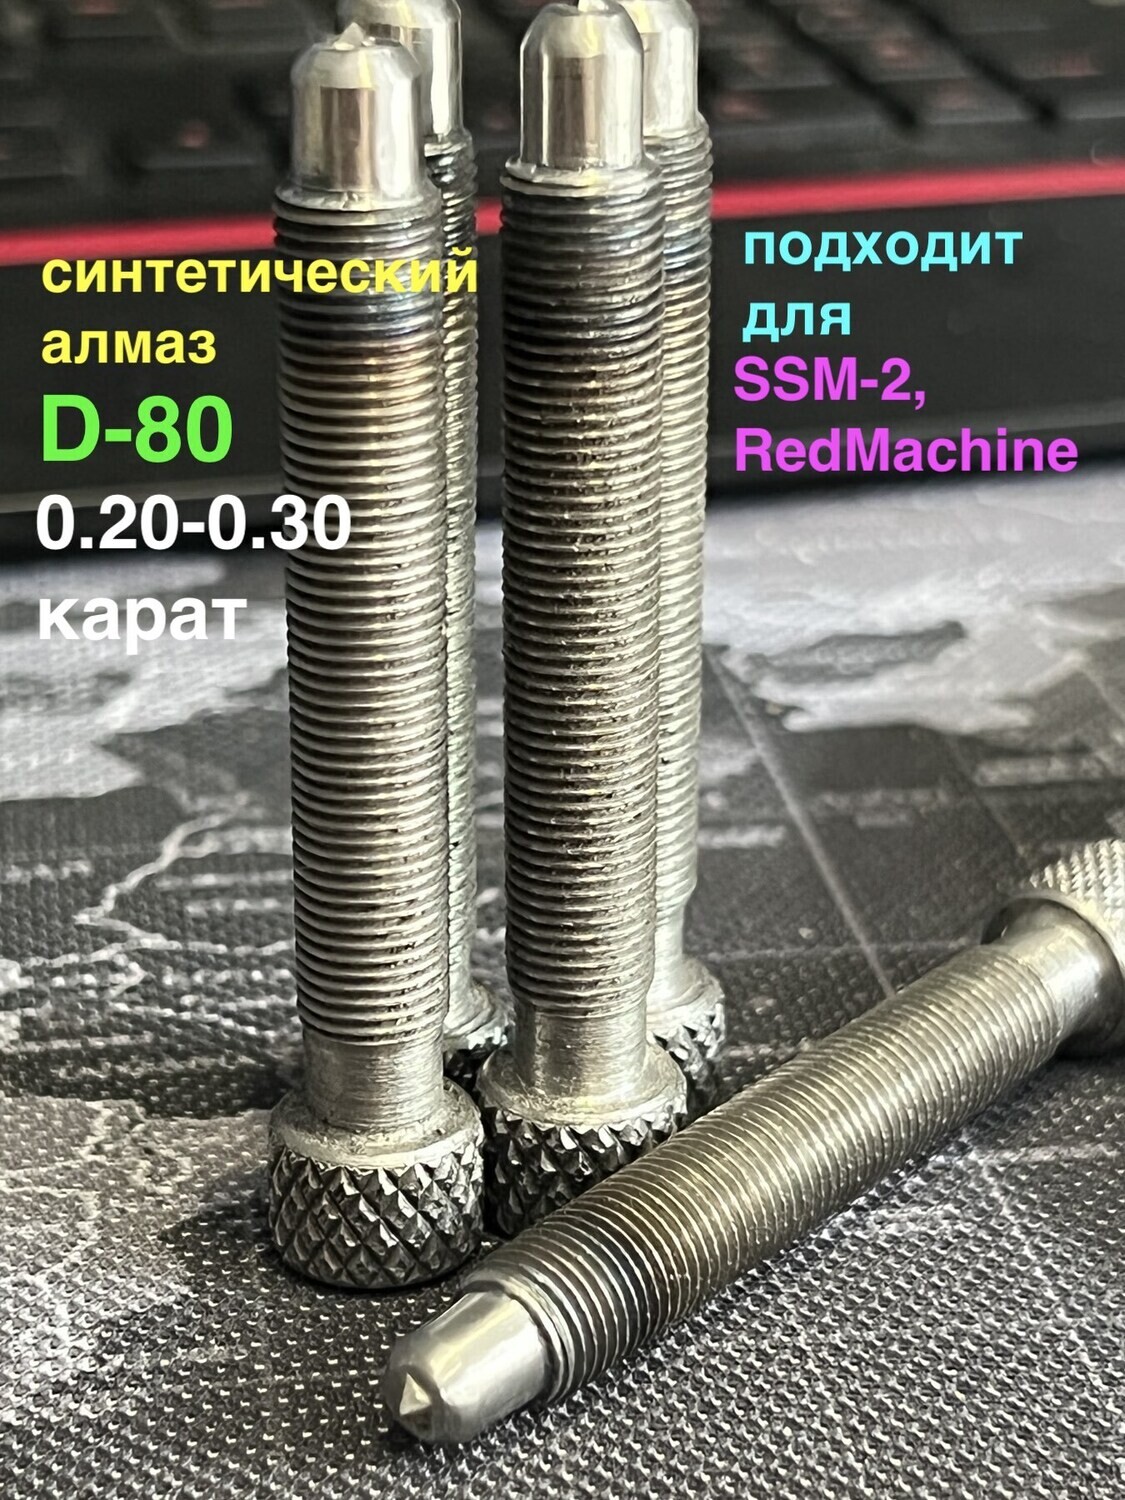 Алмаз D-80 для SSM-2/RedMachine | шип 0,20-0,30ct